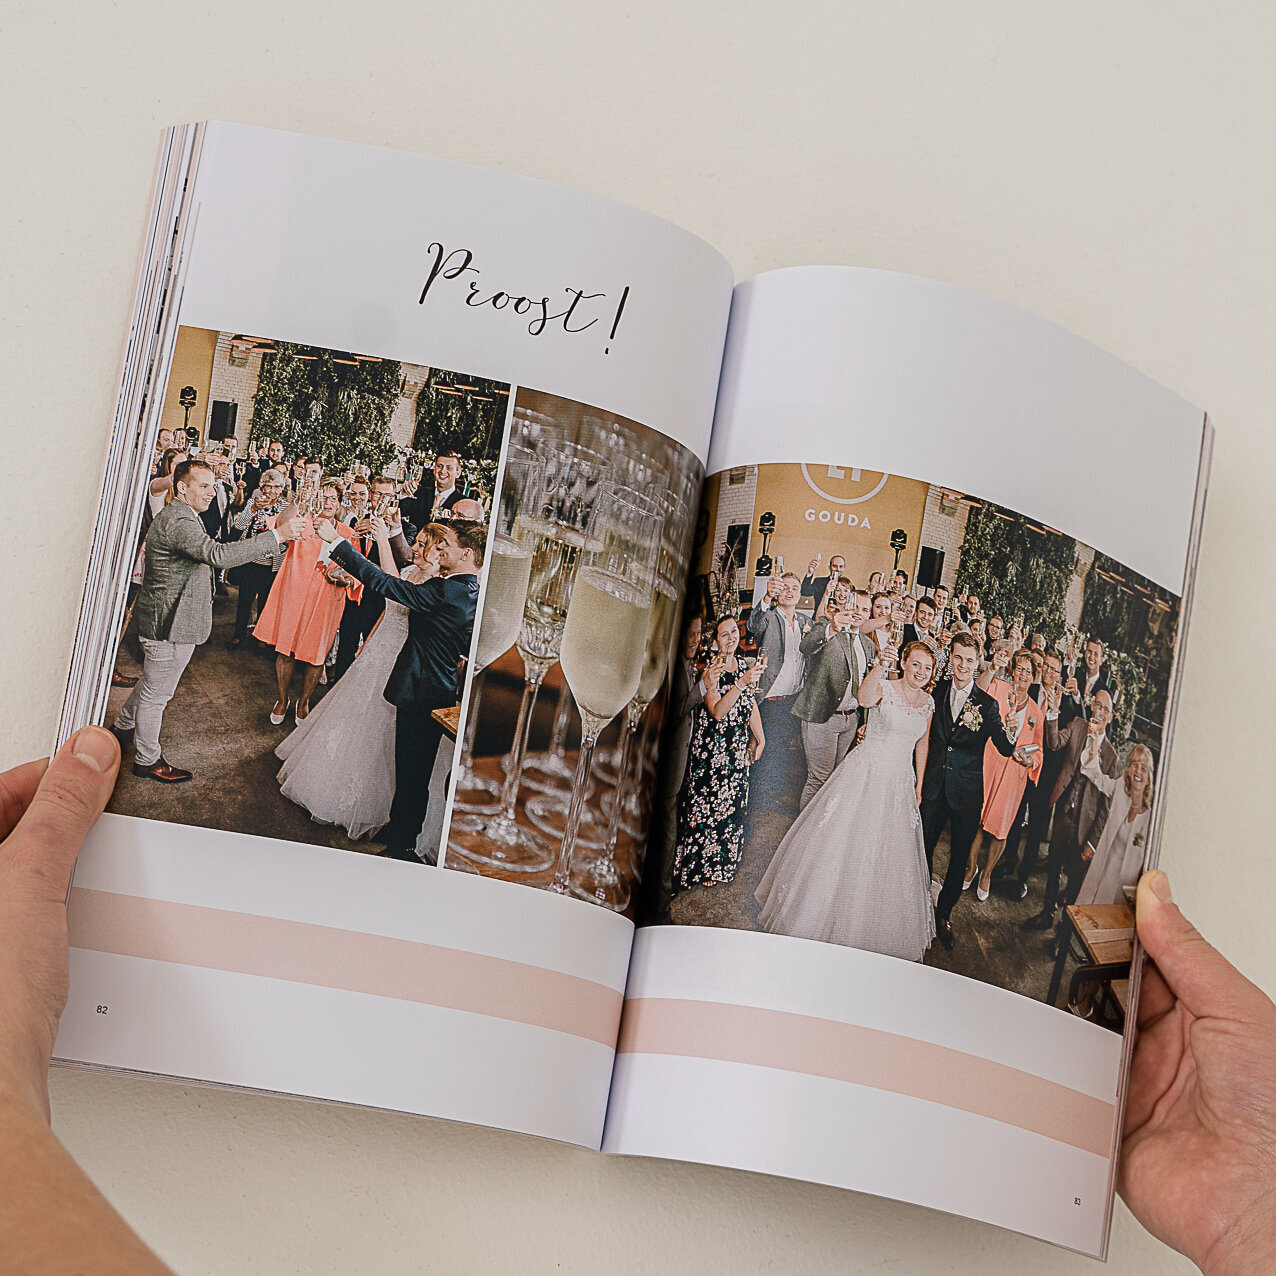 Toast met gasten in romantic wedding magazine Lichtfabriek